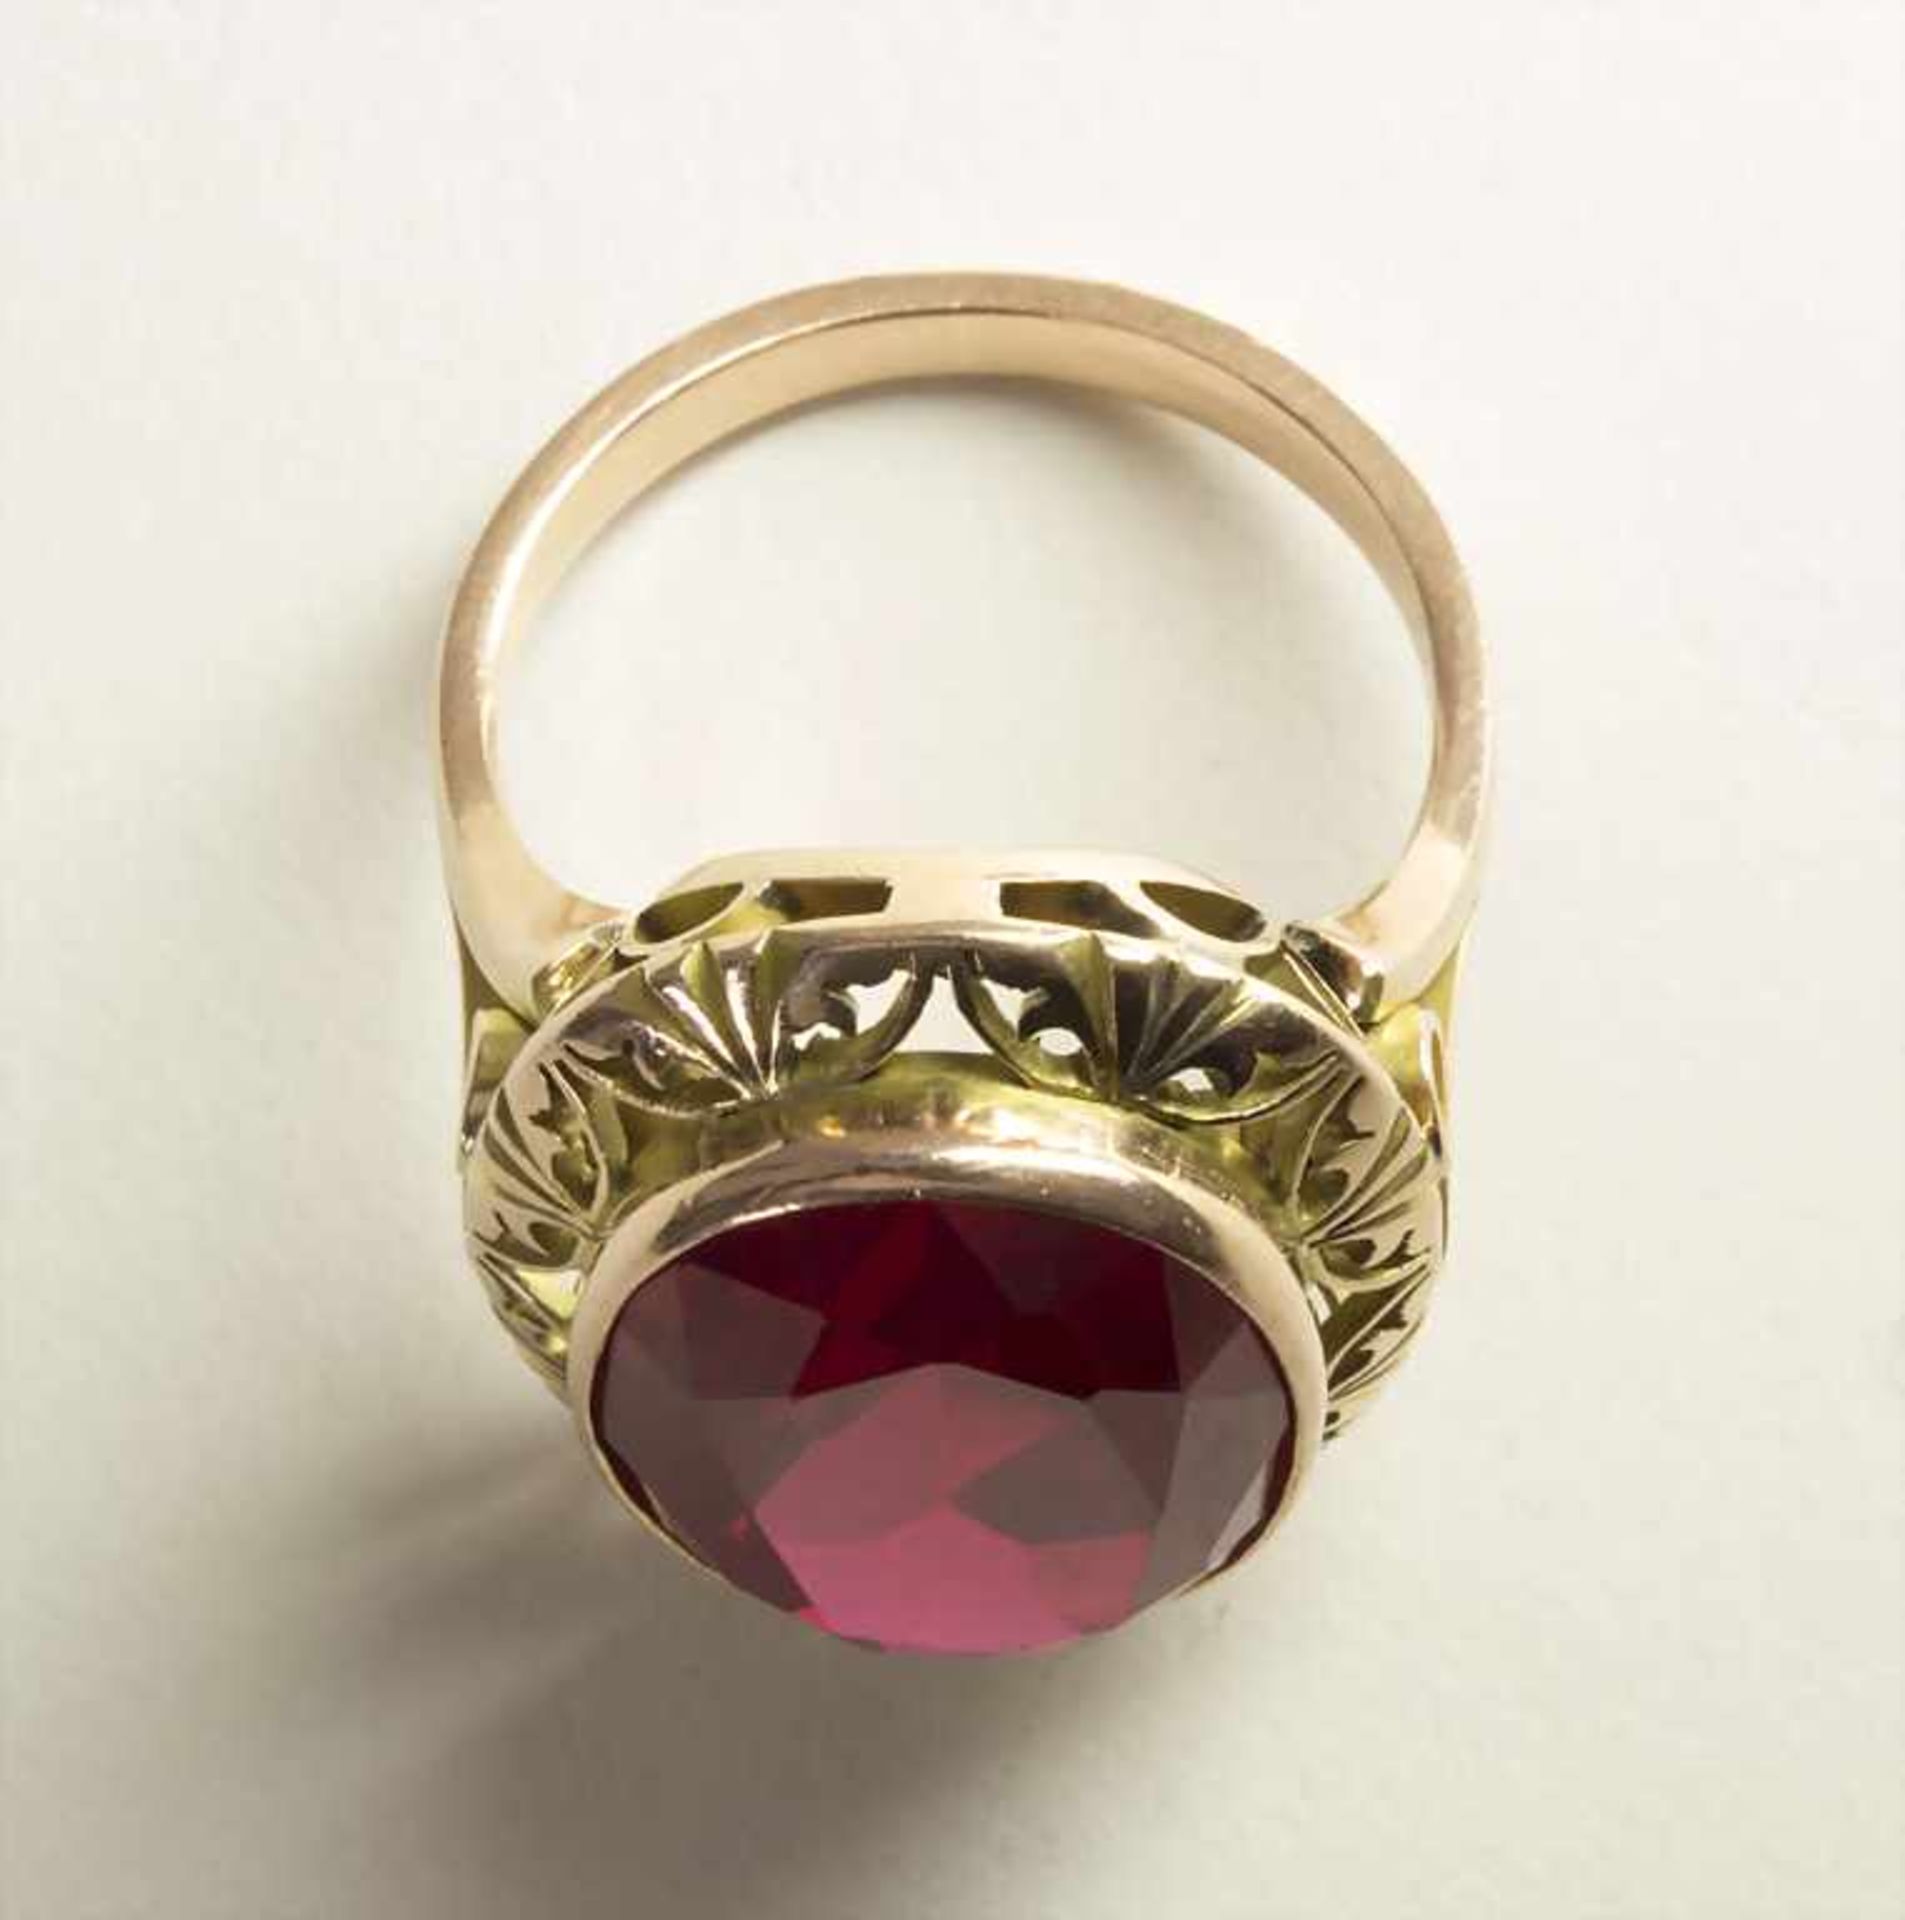 Damenring mit Farbstein / A ladies ring with red stone - Bild 3 aus 3